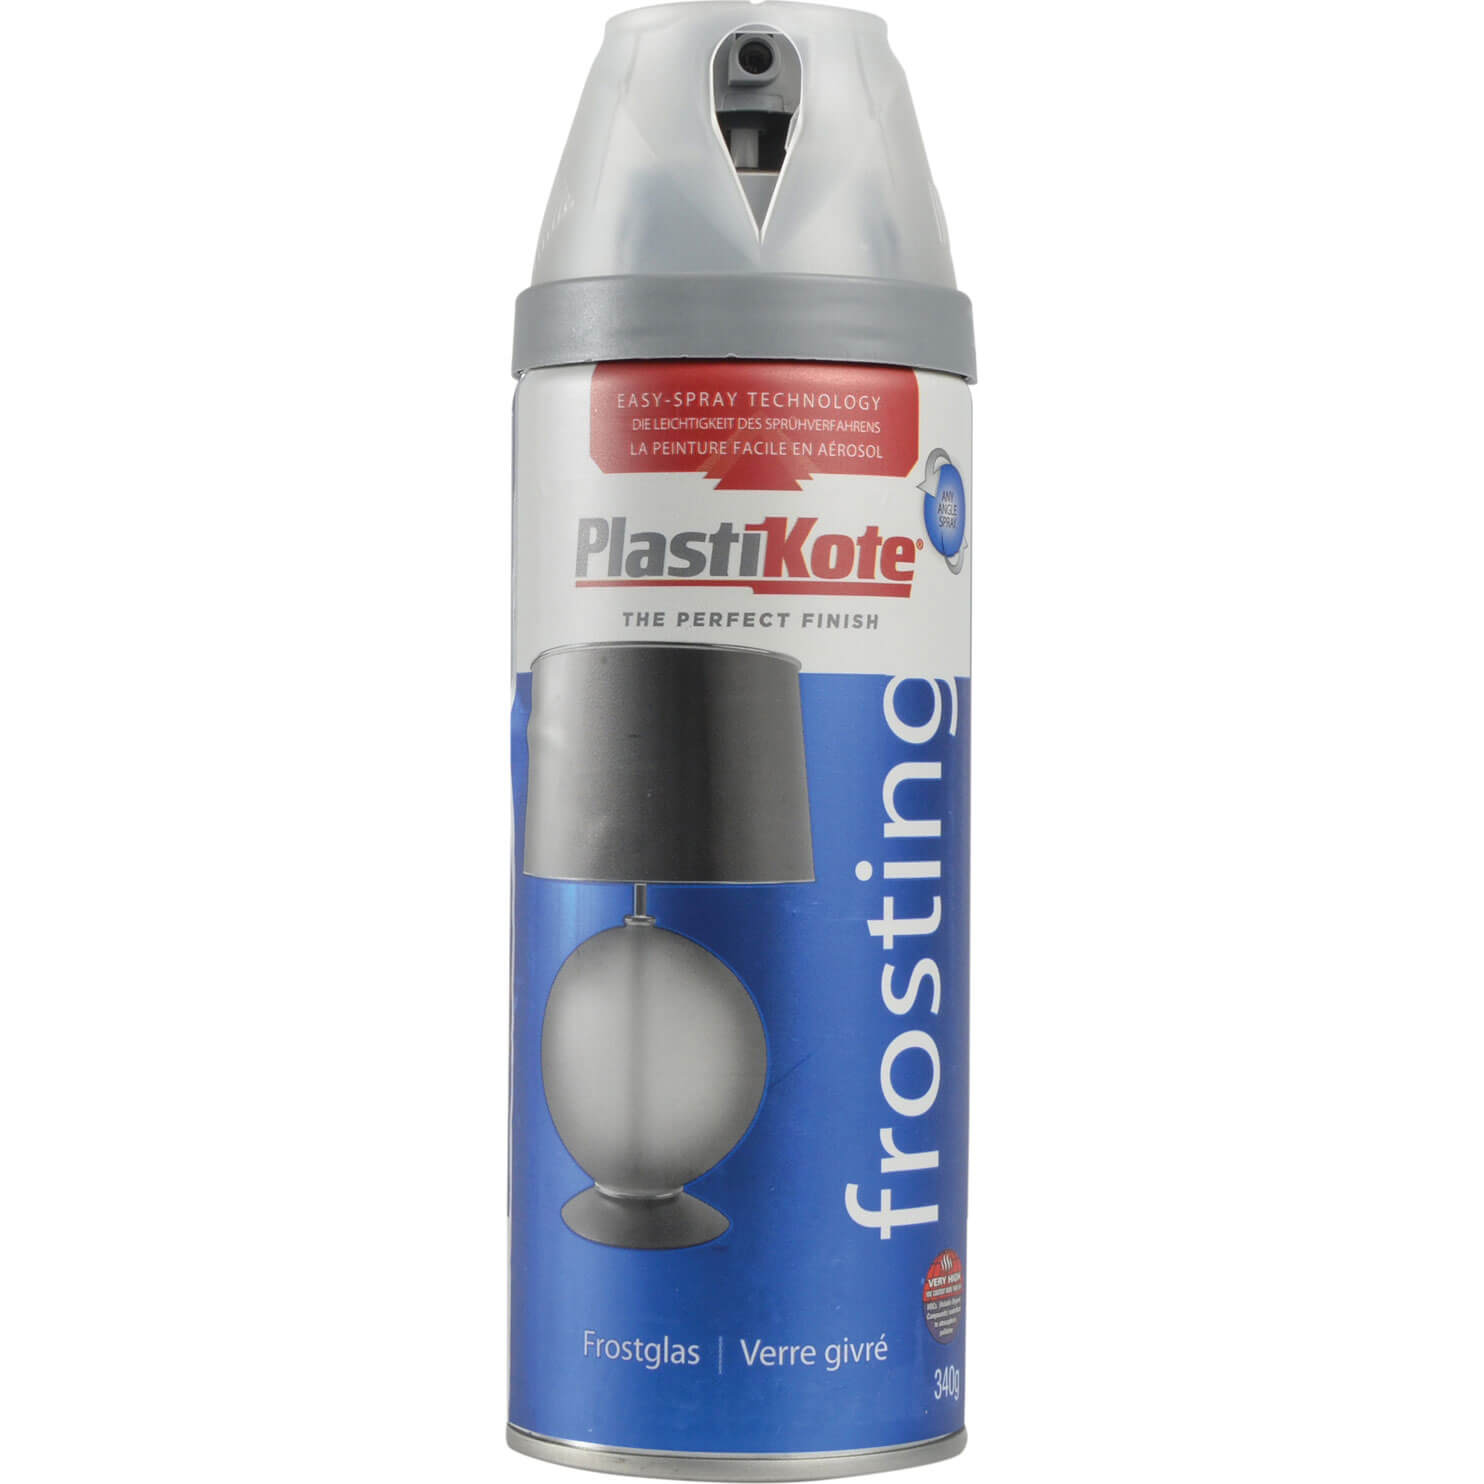 Image of Plastikote Aerosol Glass Frosting Spray 400ml